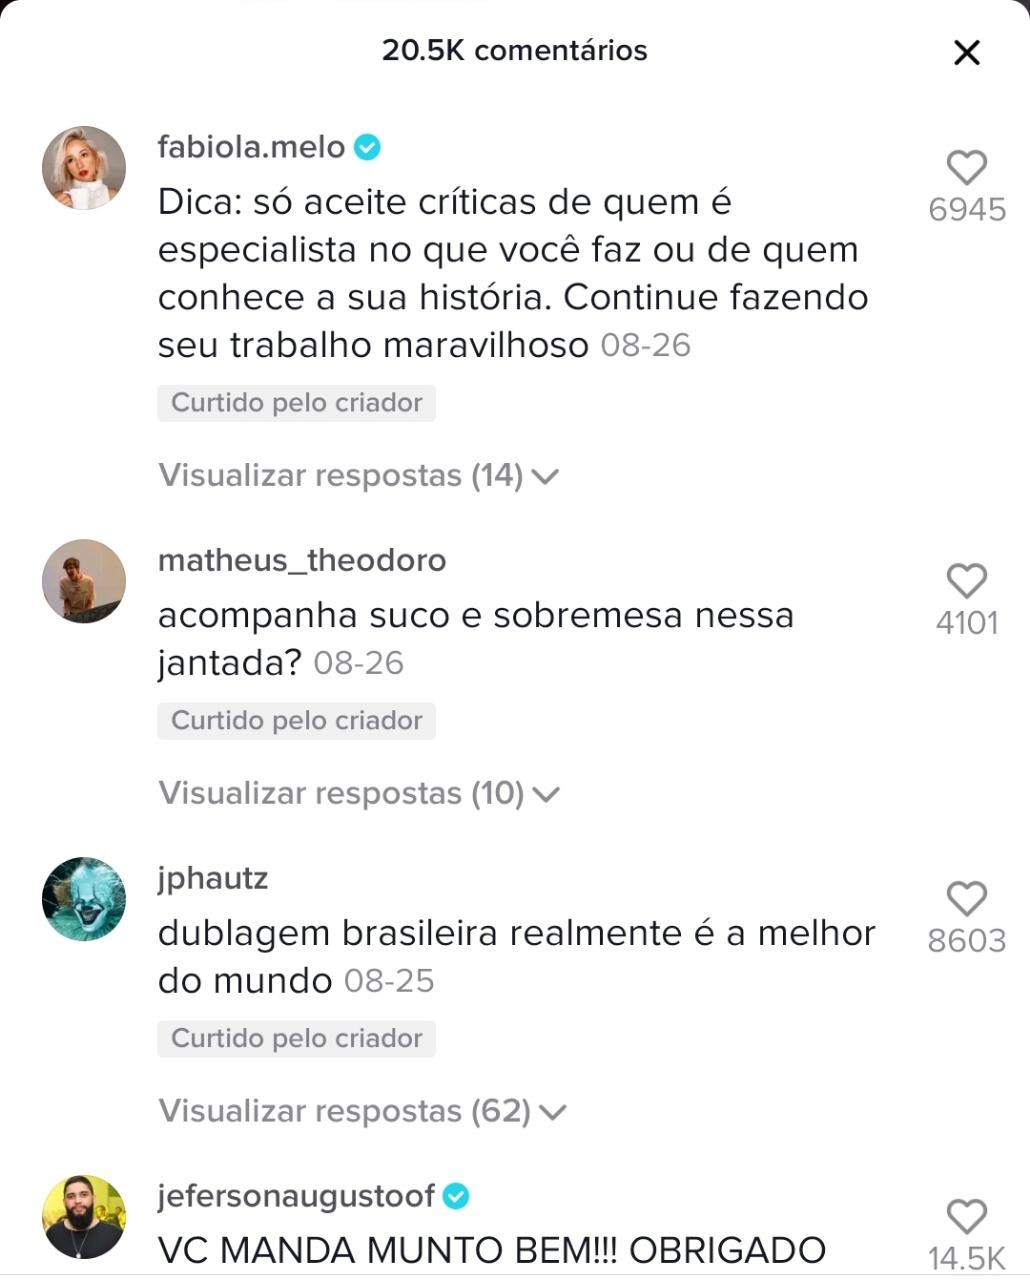 Chuva de comentários em apoio ao trabalho de Isabelle Cunha lotam o vídeo nas redes sociais (Foto: Reprodução: Tik ToK)